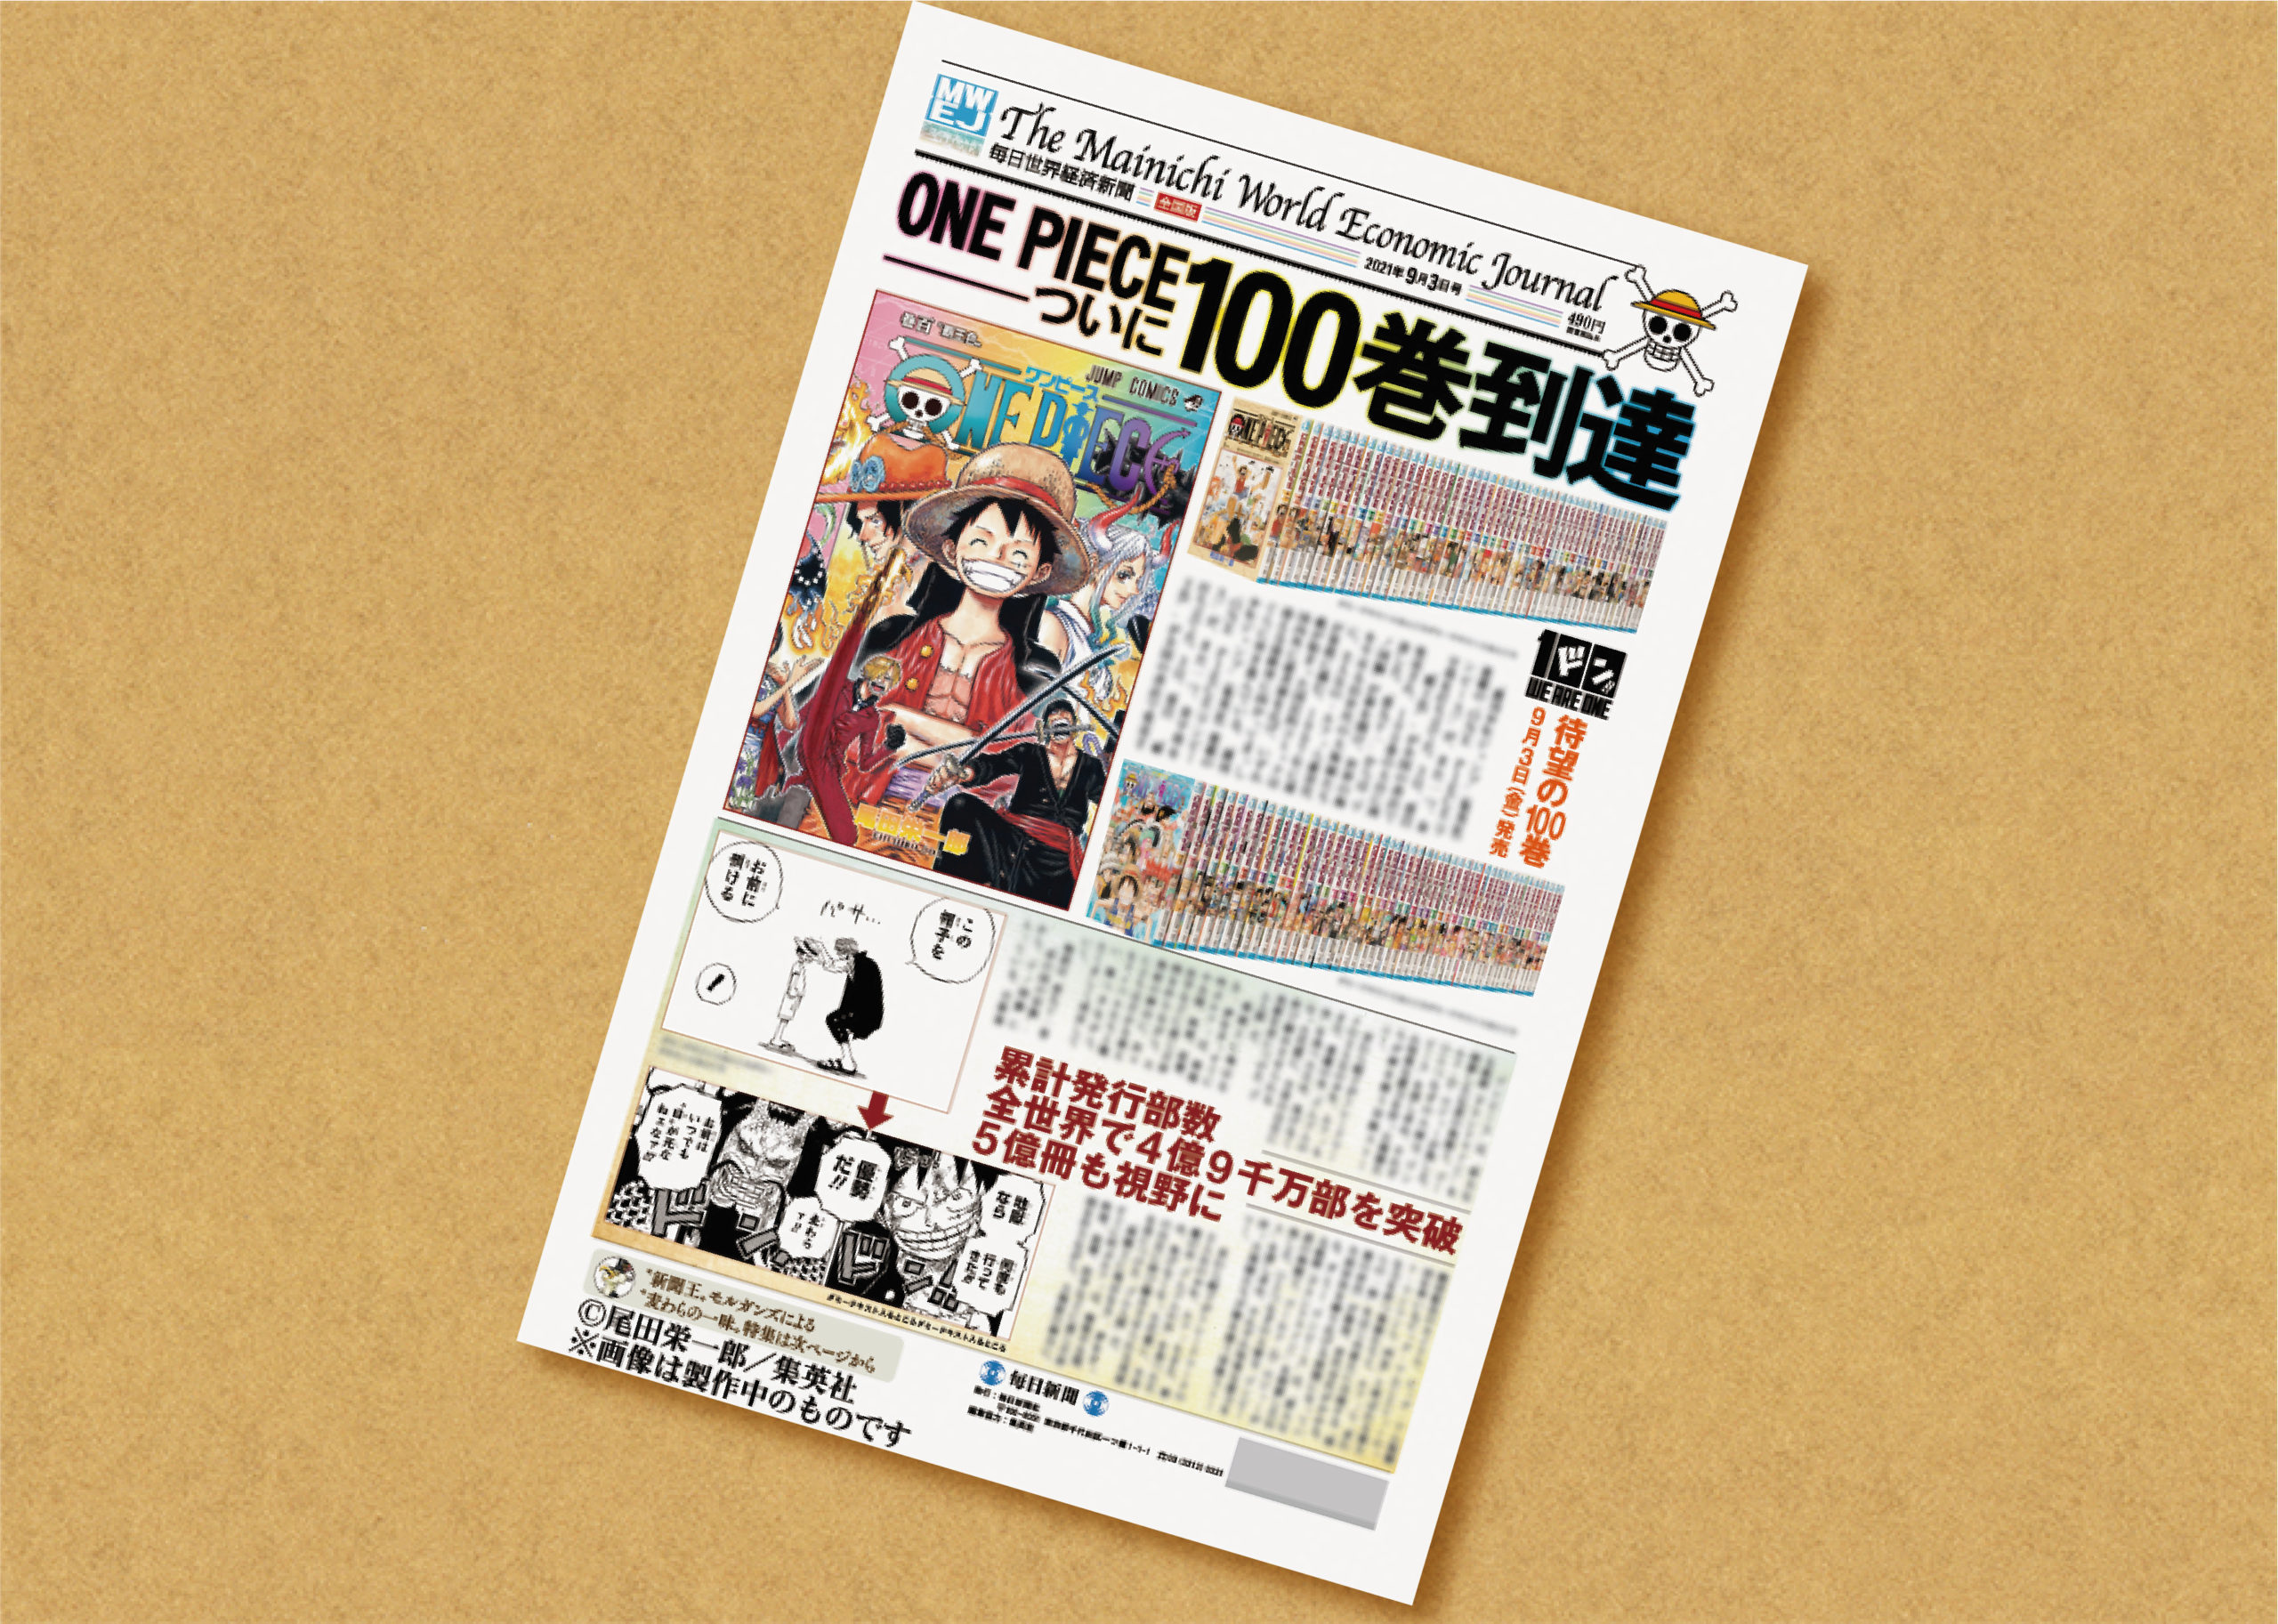 One Piece ワンピース コミックス100巻記念 毎日世界経済新聞 発売スタート 株式会社小野新聞店